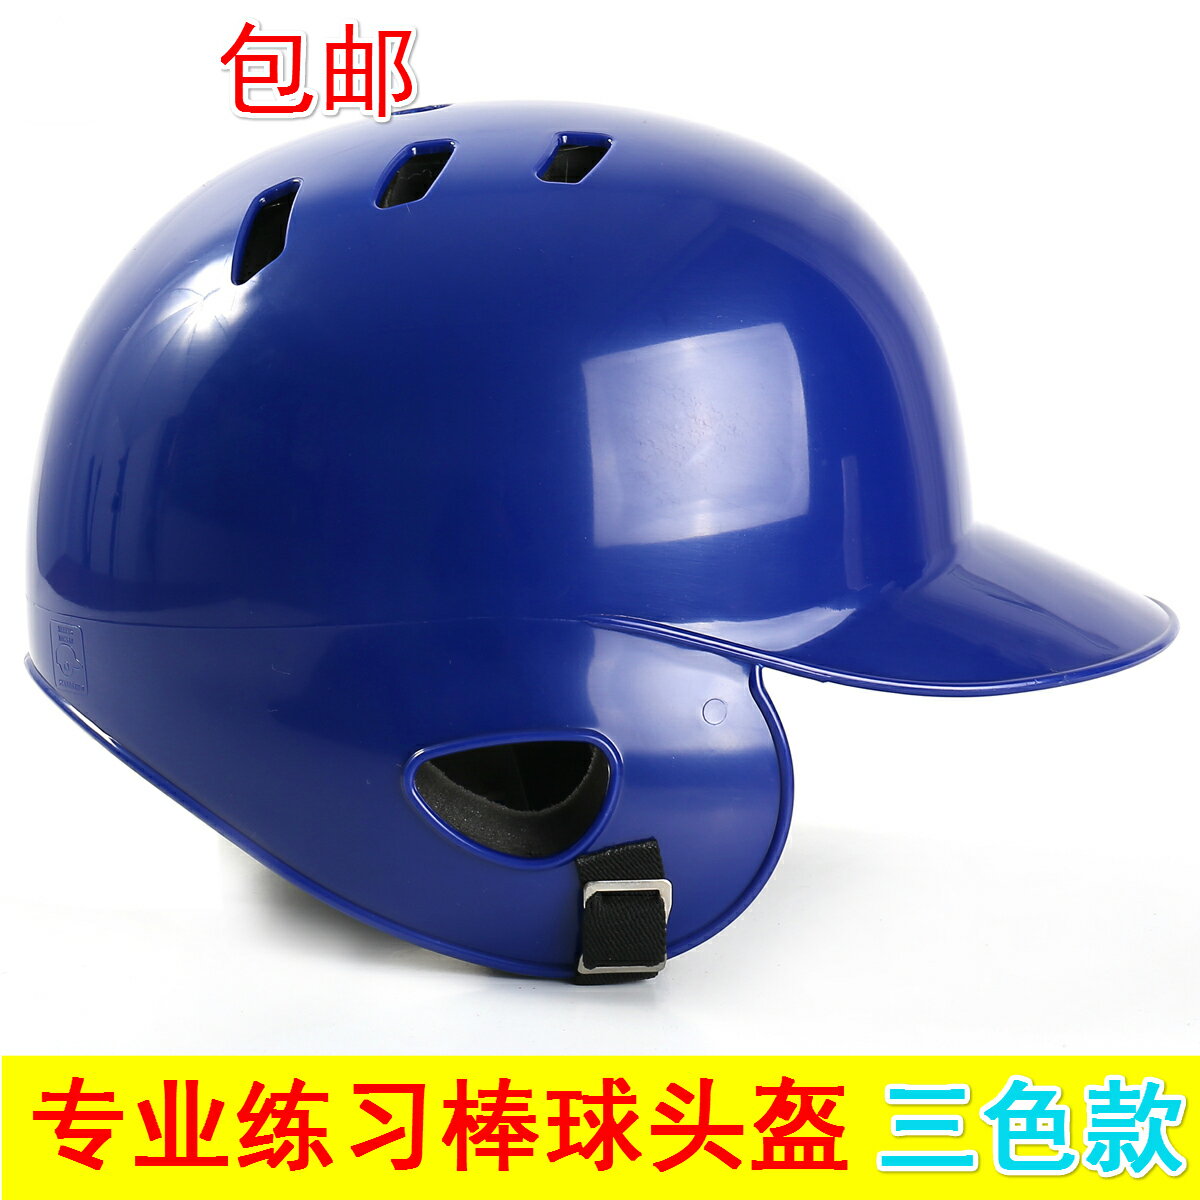 新款2021年夏季 打擊雙耳棒球頭盔 戴面具防護罩護